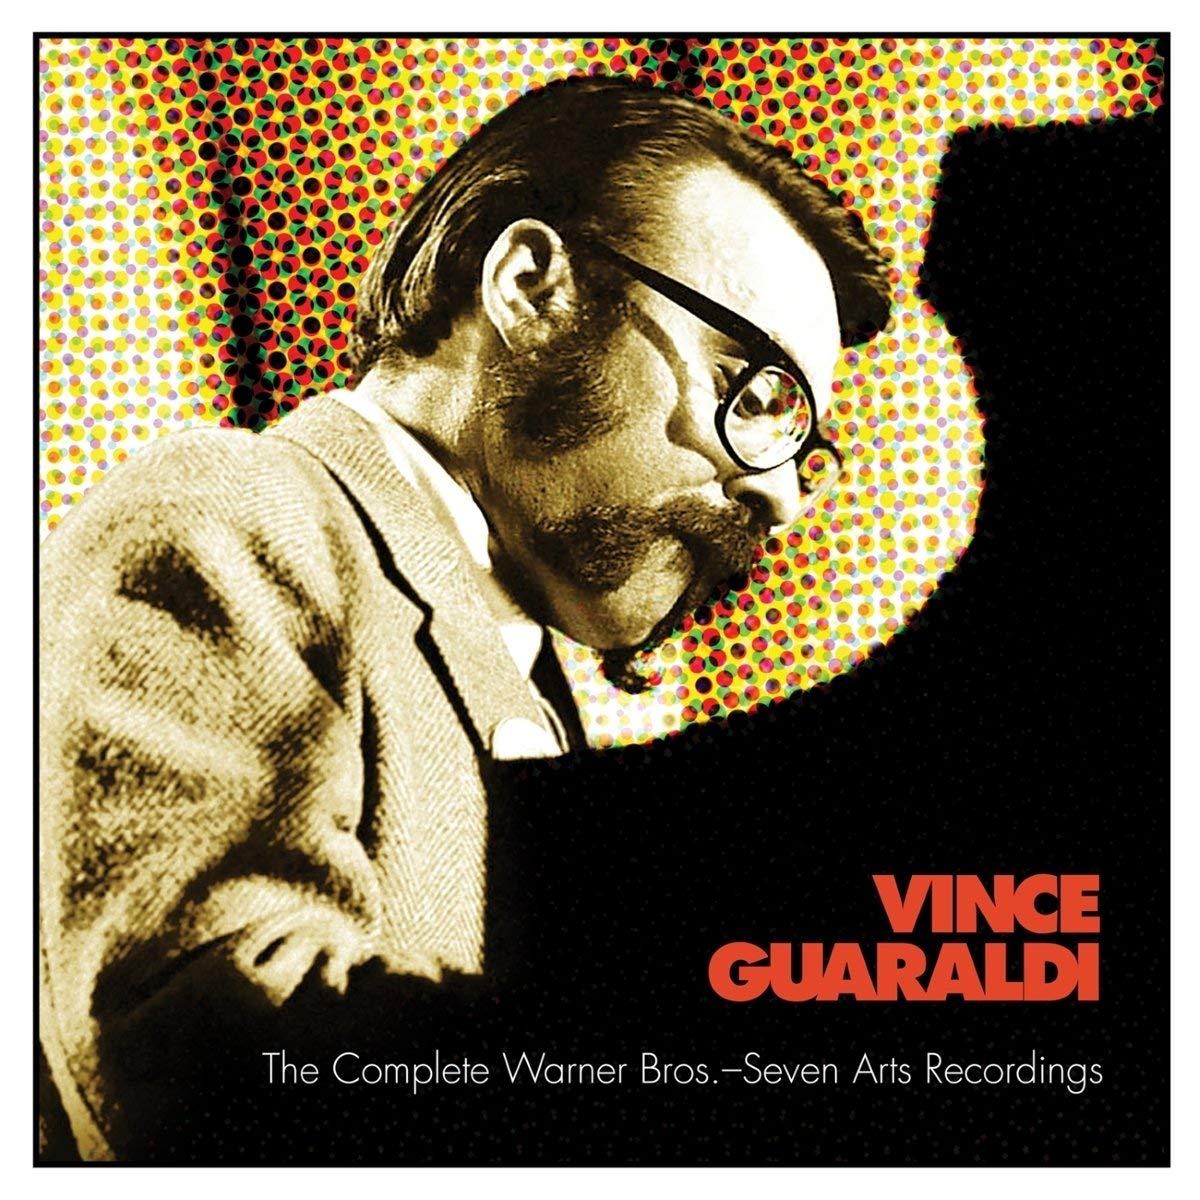 VINCE GUARALDI - The Complete Warner Bros.-Seven Arts Recordings cover 